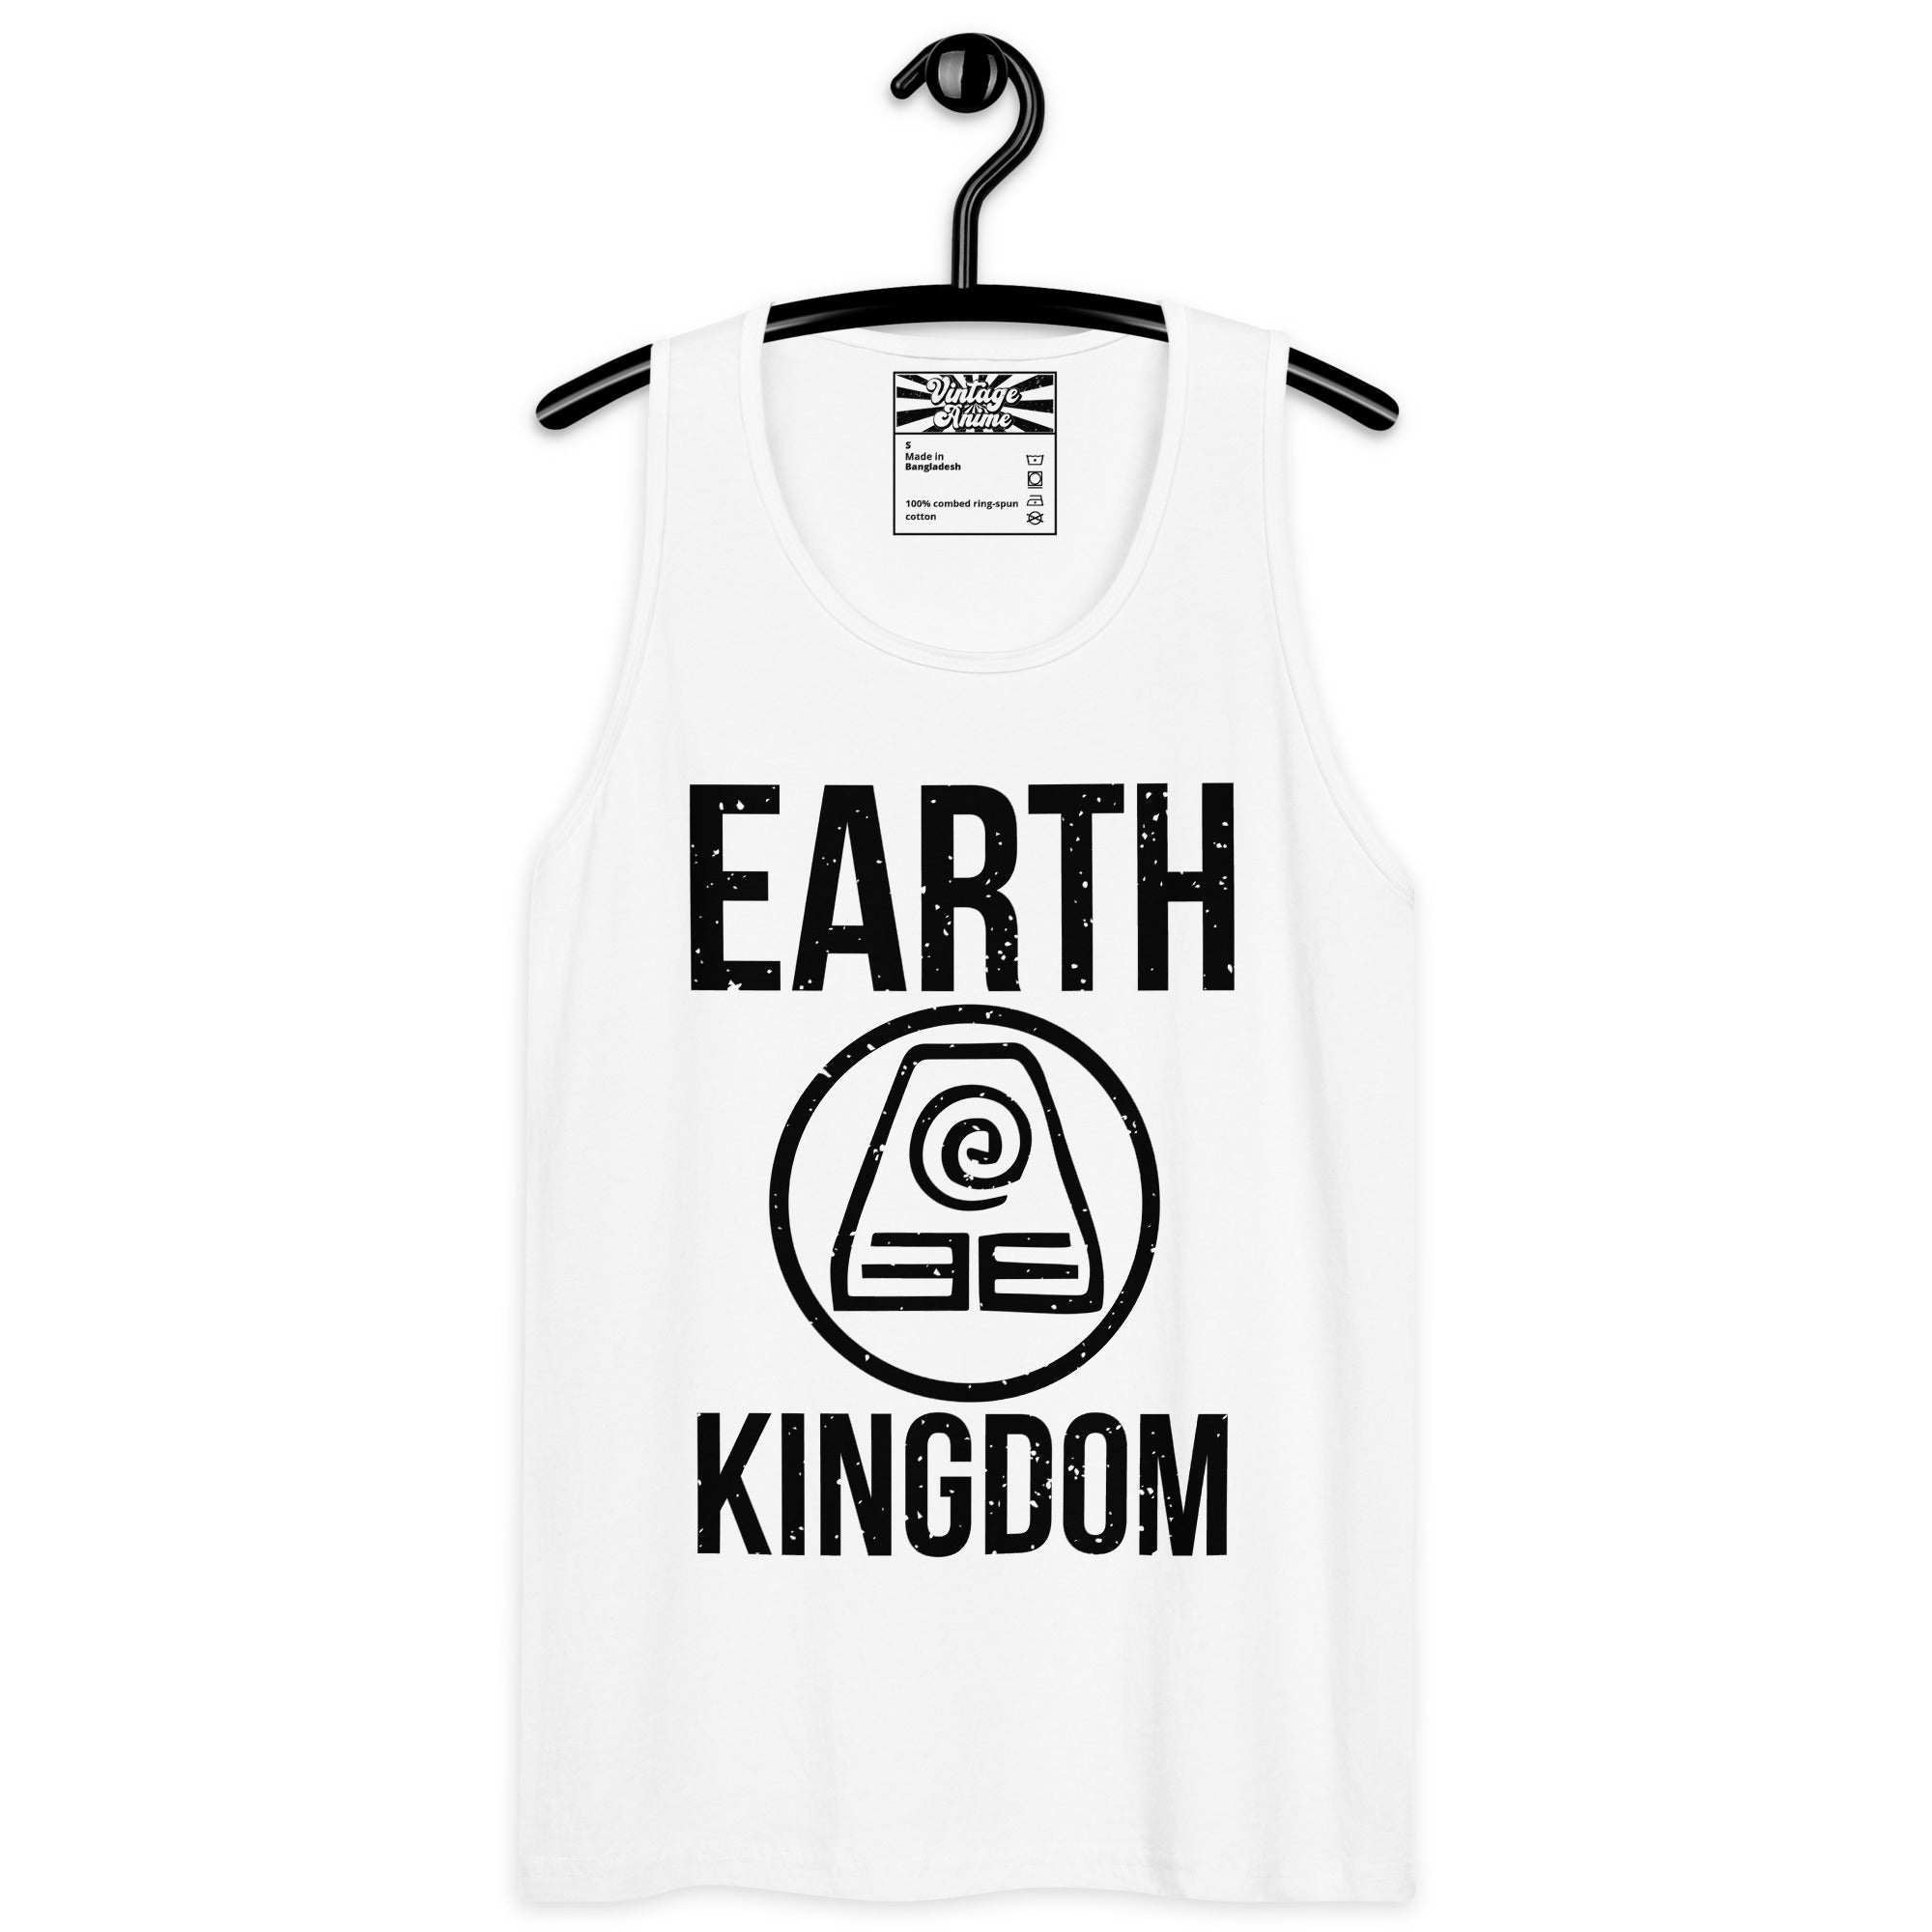 White Earthbender Earth Kingdom Mens Tank Tops